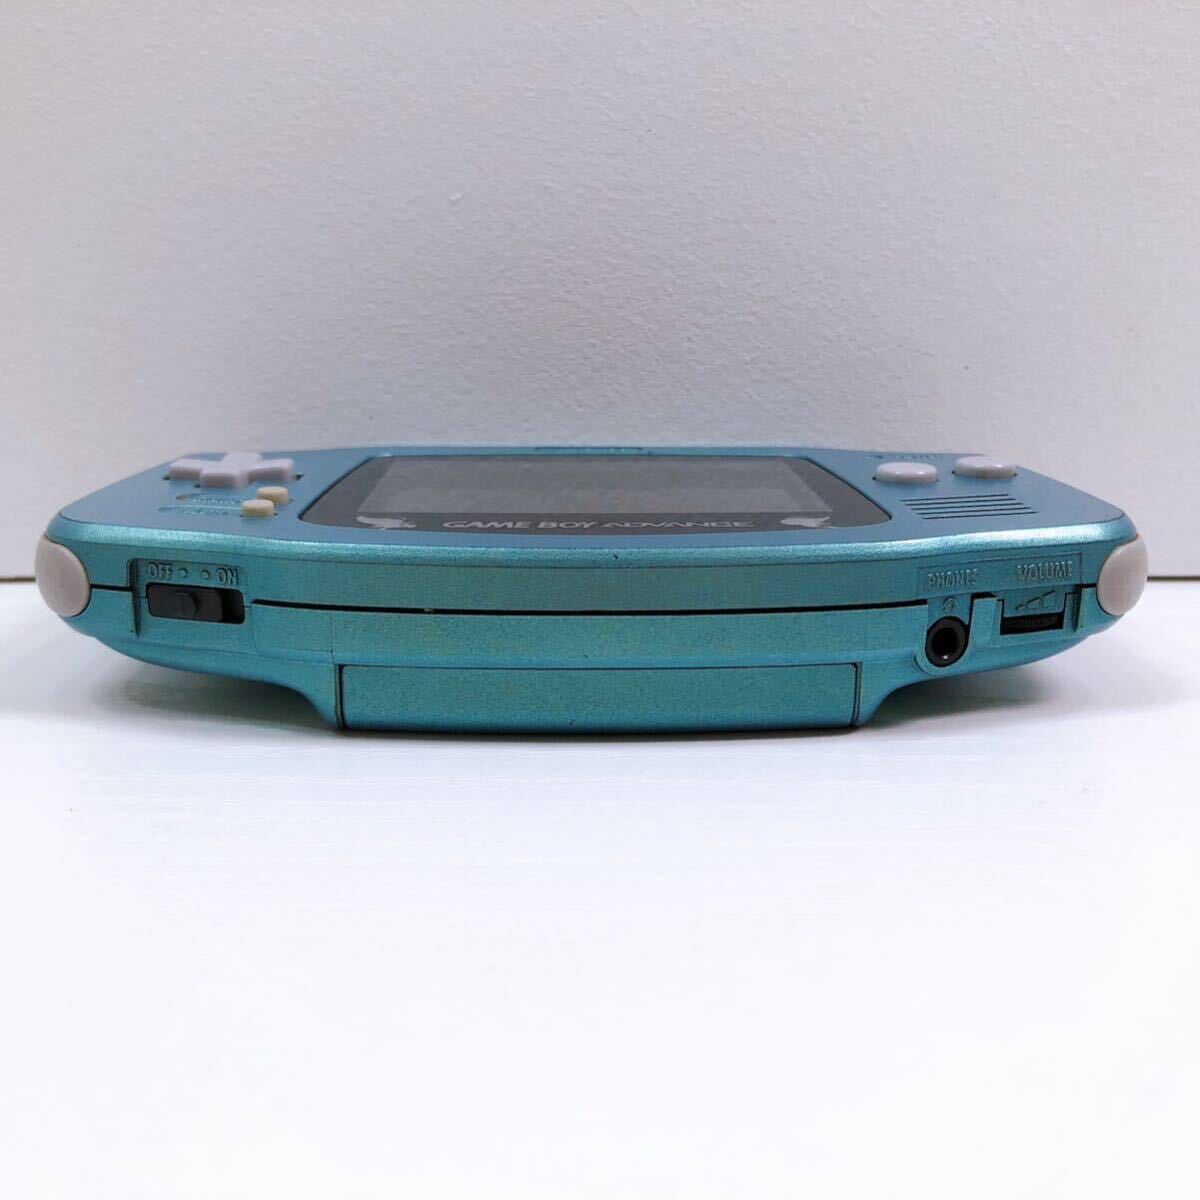 108[ б/у ]Nintendo GAMEBOY ADVANCE Game Boy Advance корпус Pokemon центральный ограничение selection bi. зеленый AGB-S-PC1 электризация подтверждено текущее состояние товар 